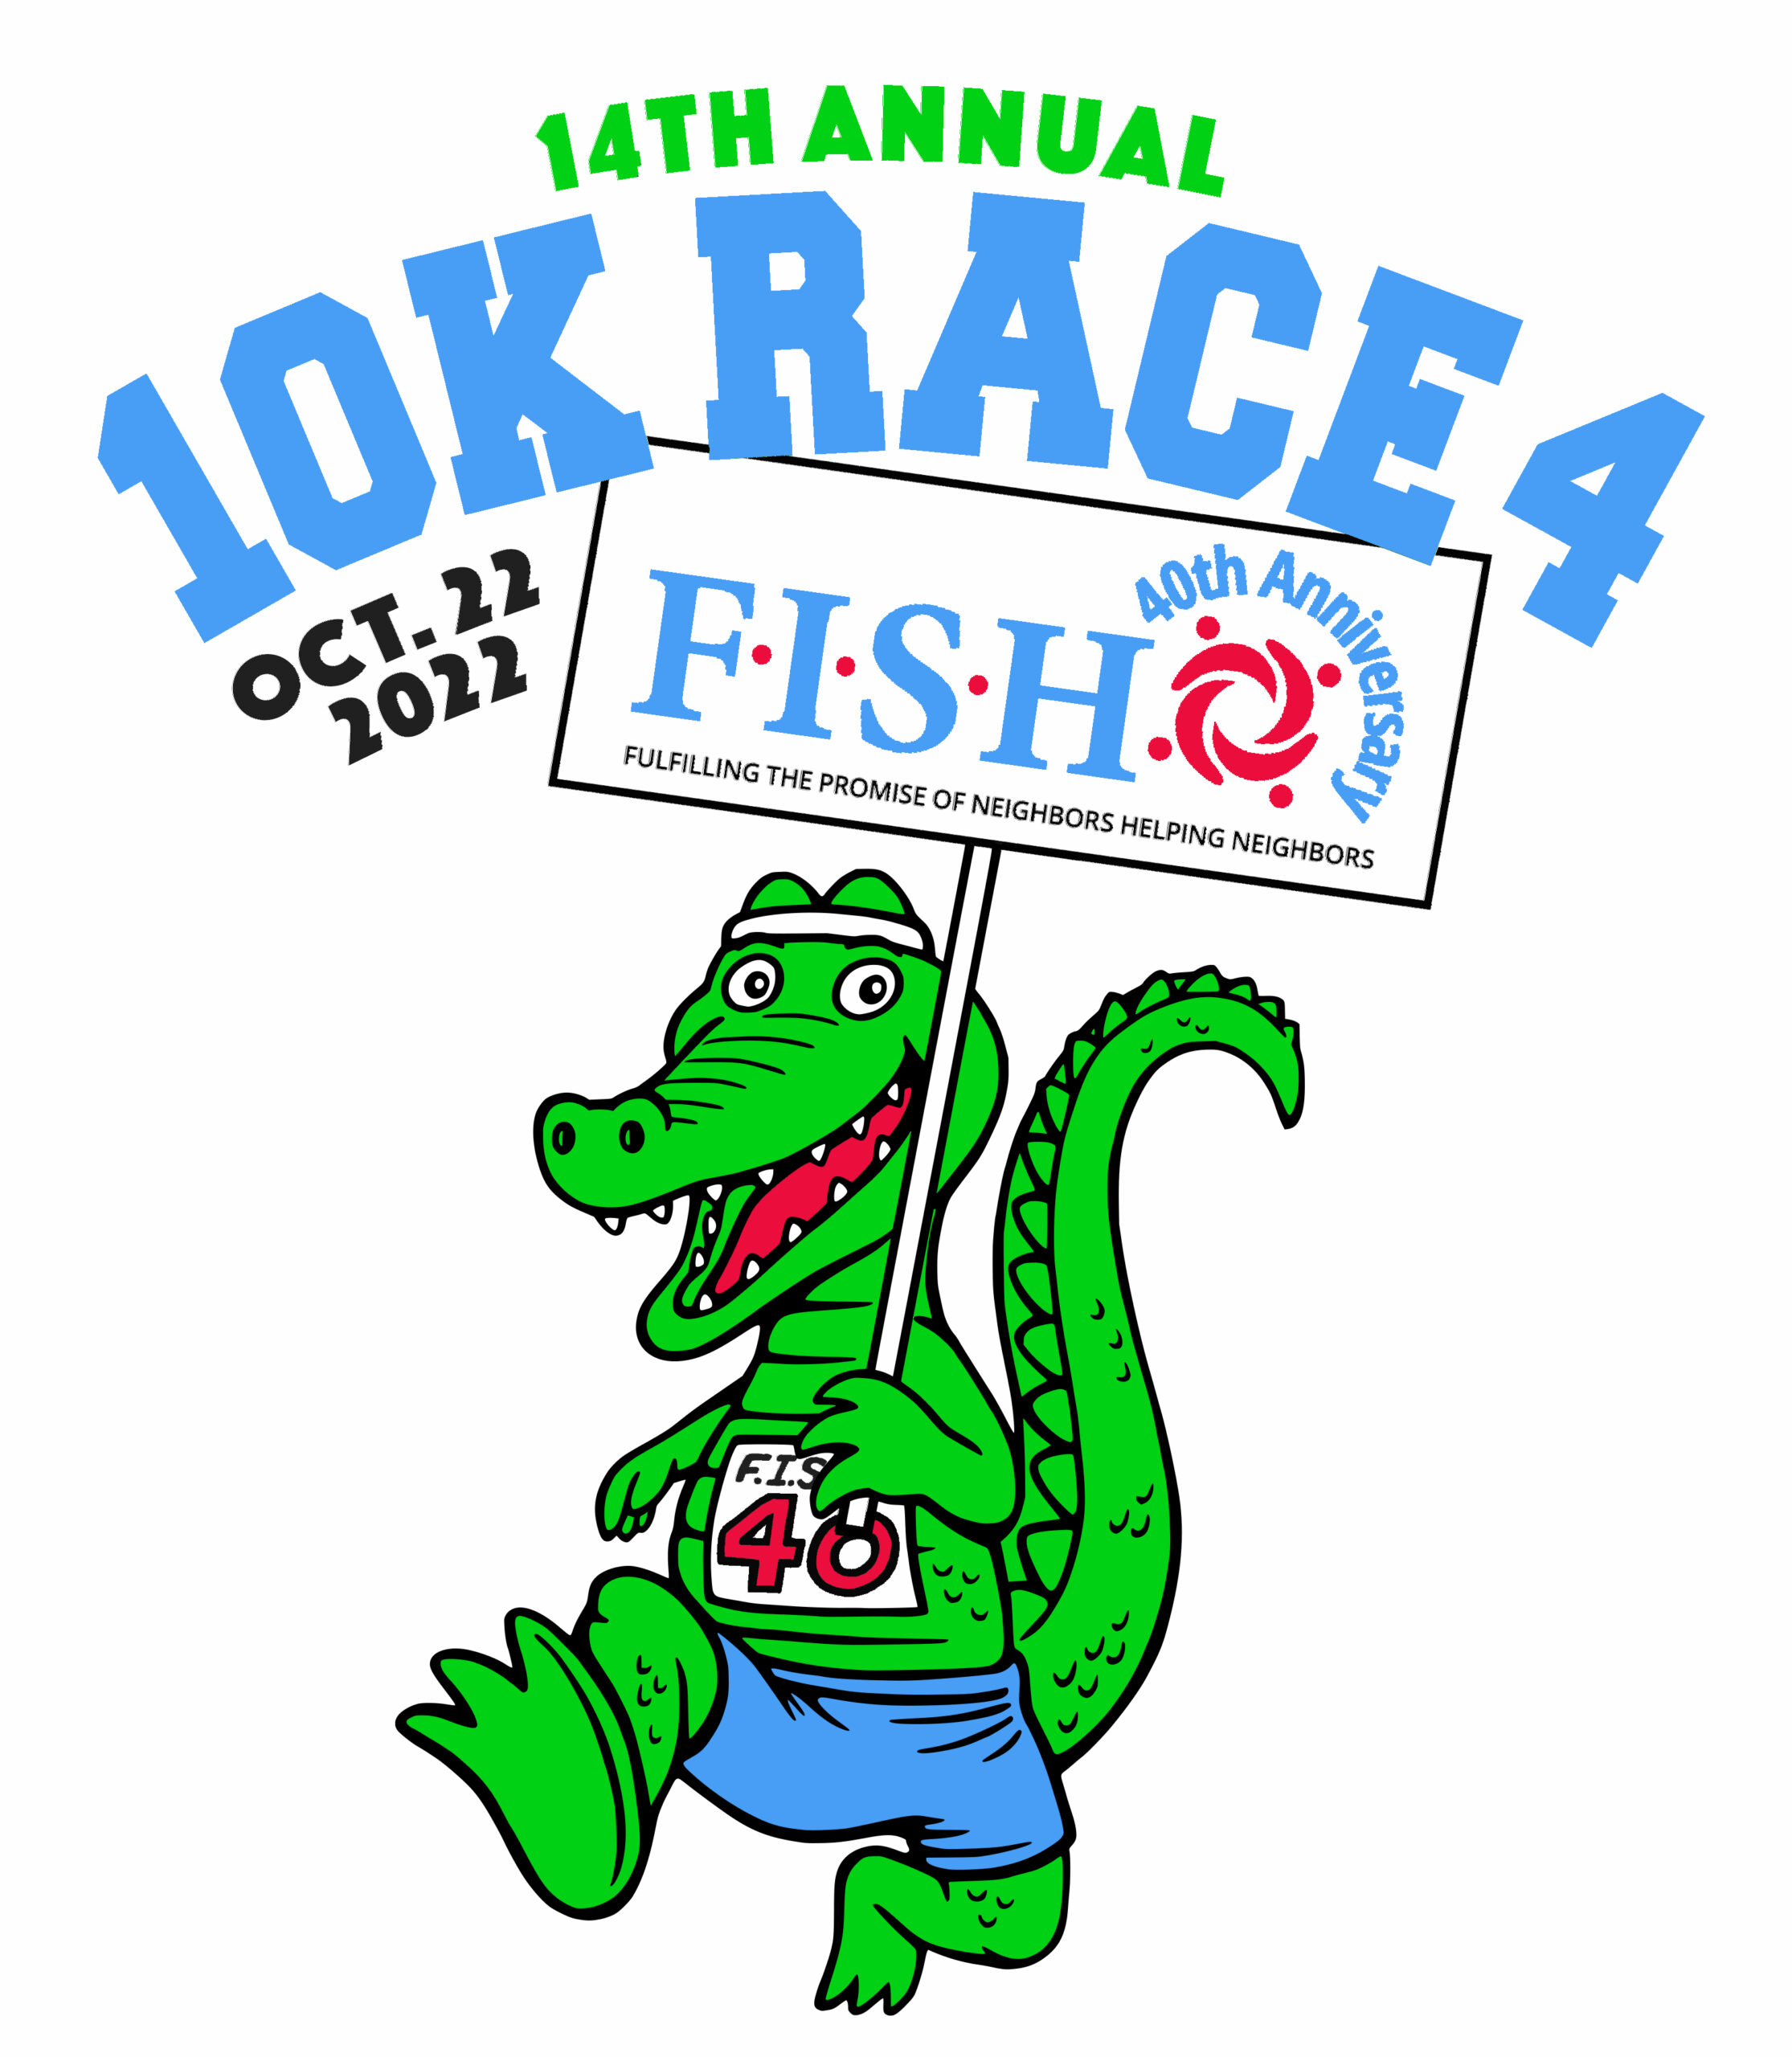 10-k-race-logo-22